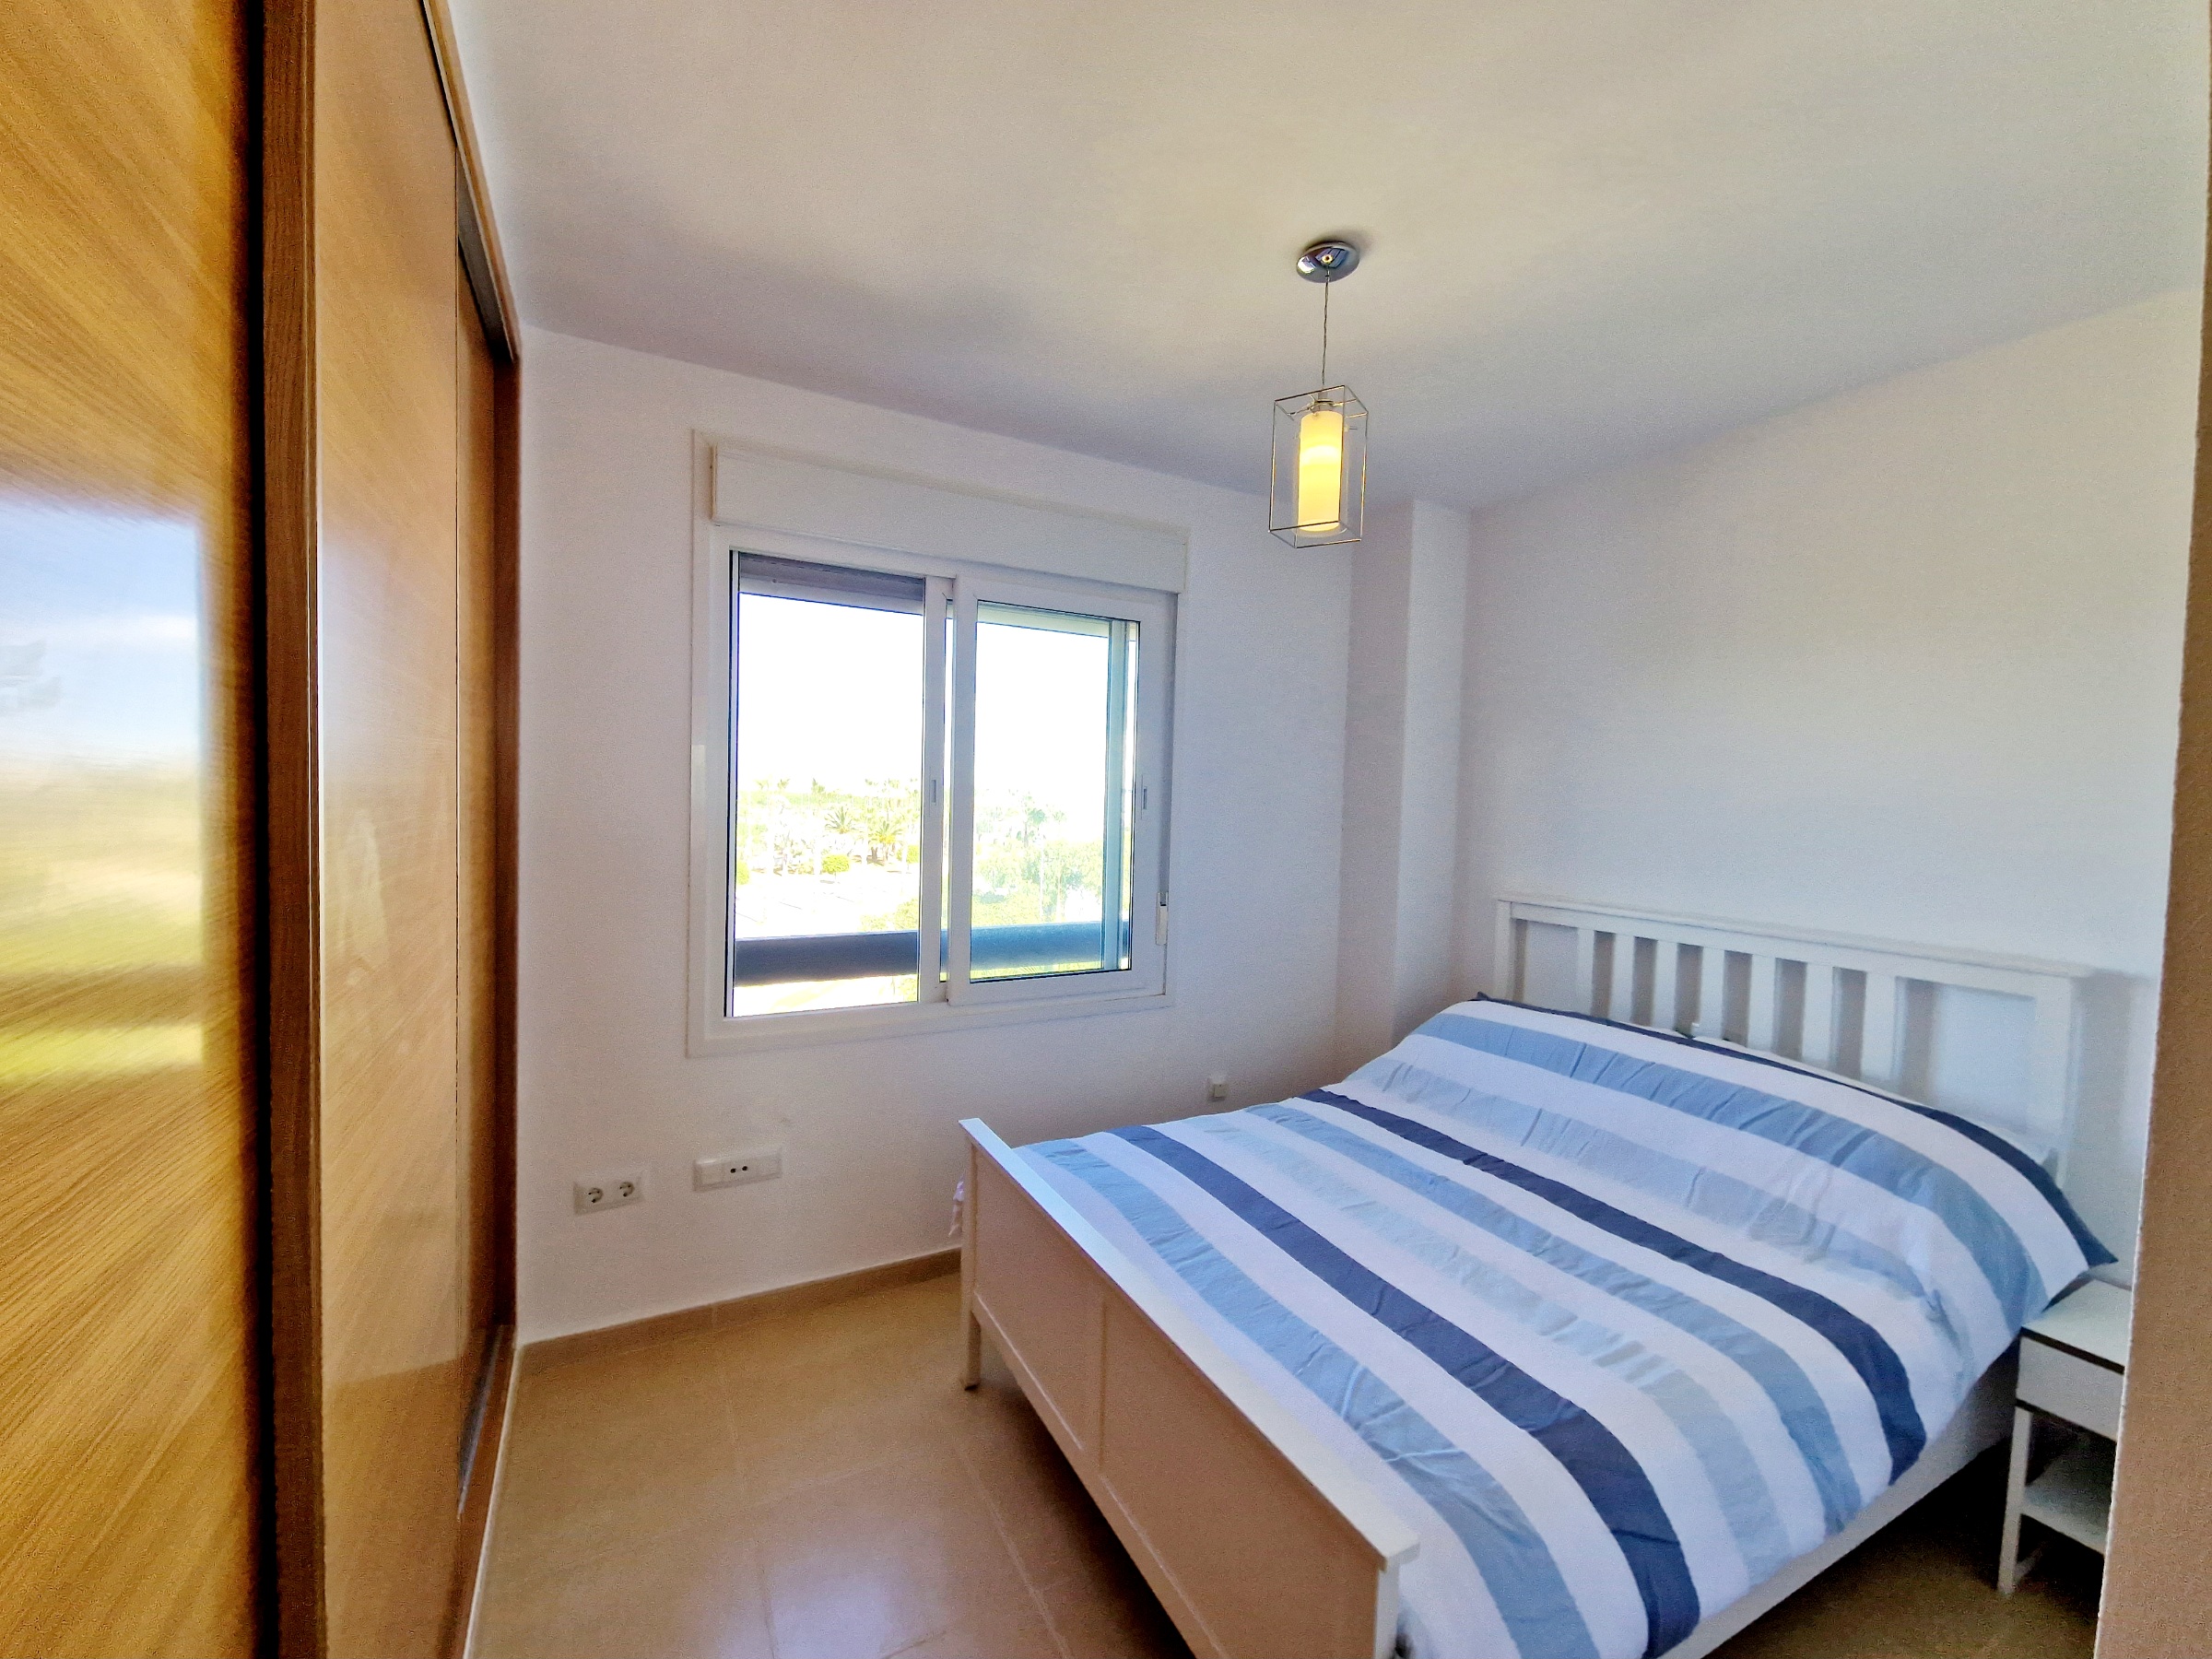 3 bed 2 bath Penthouse apartment with amazing views – Terrazas De La Torre Golf Resort